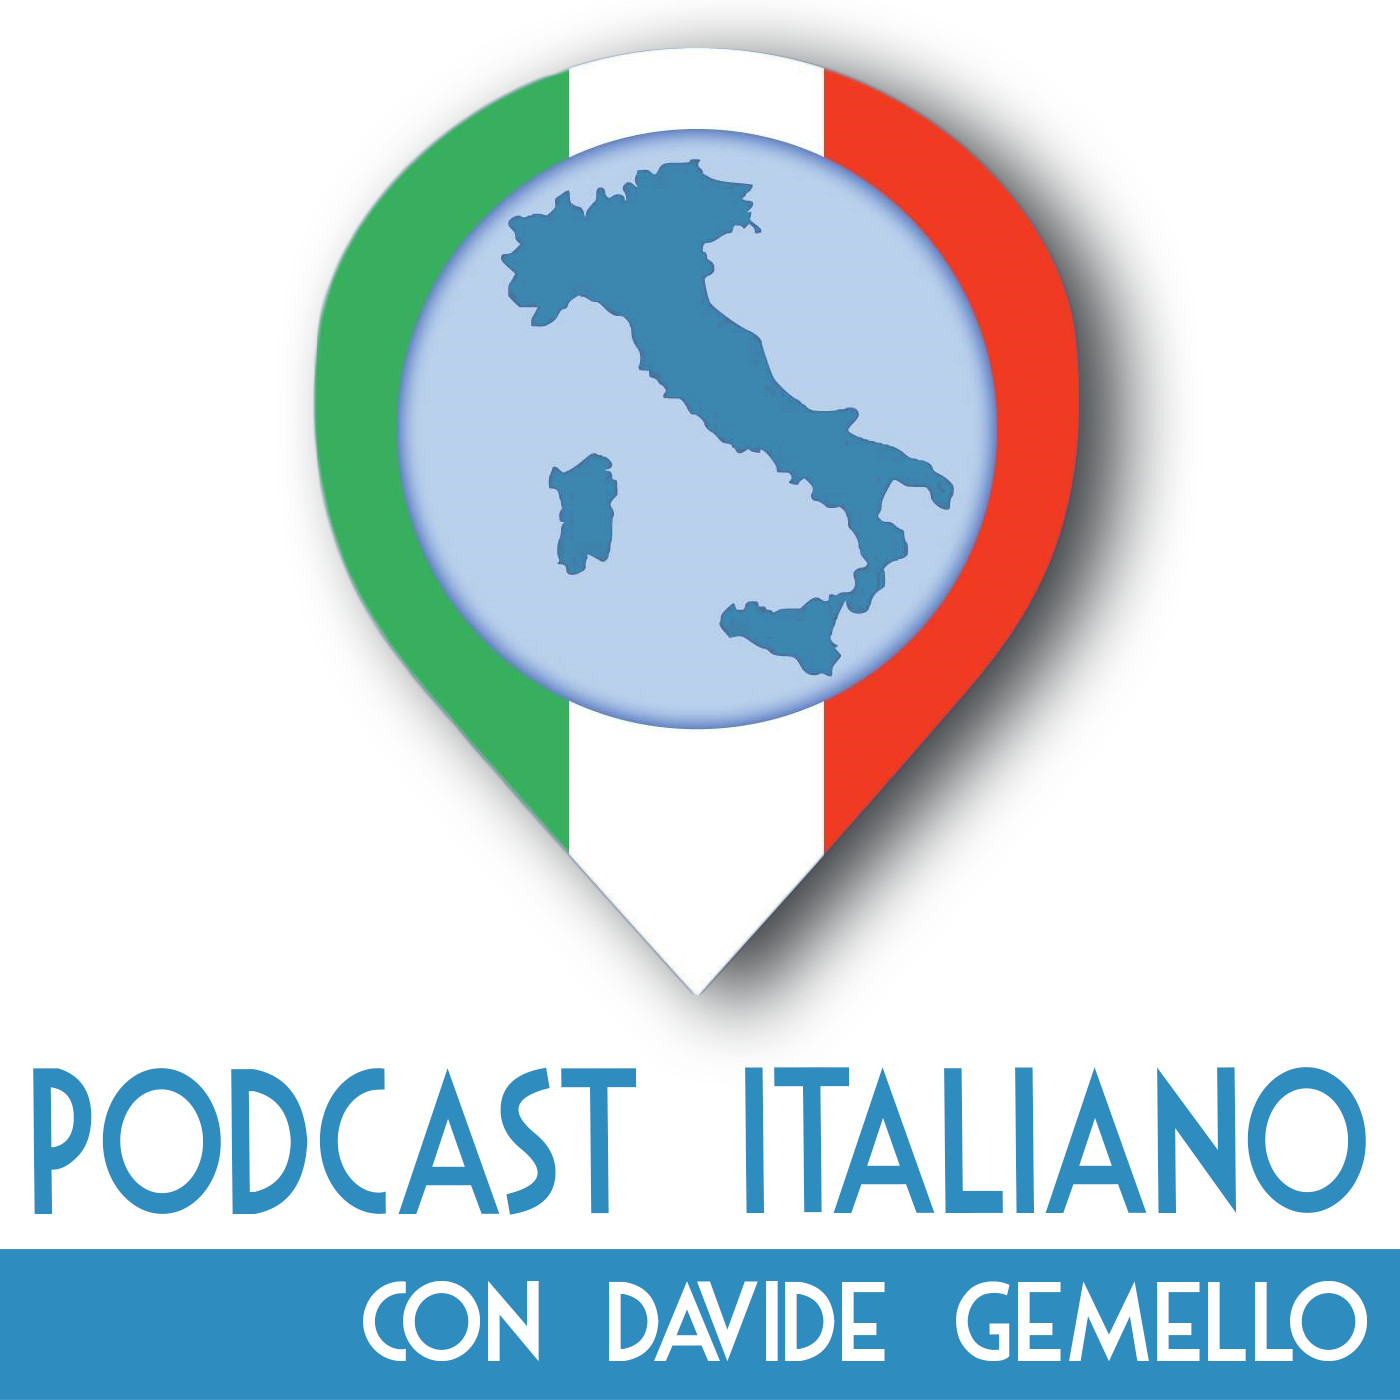 Podcast Italiano